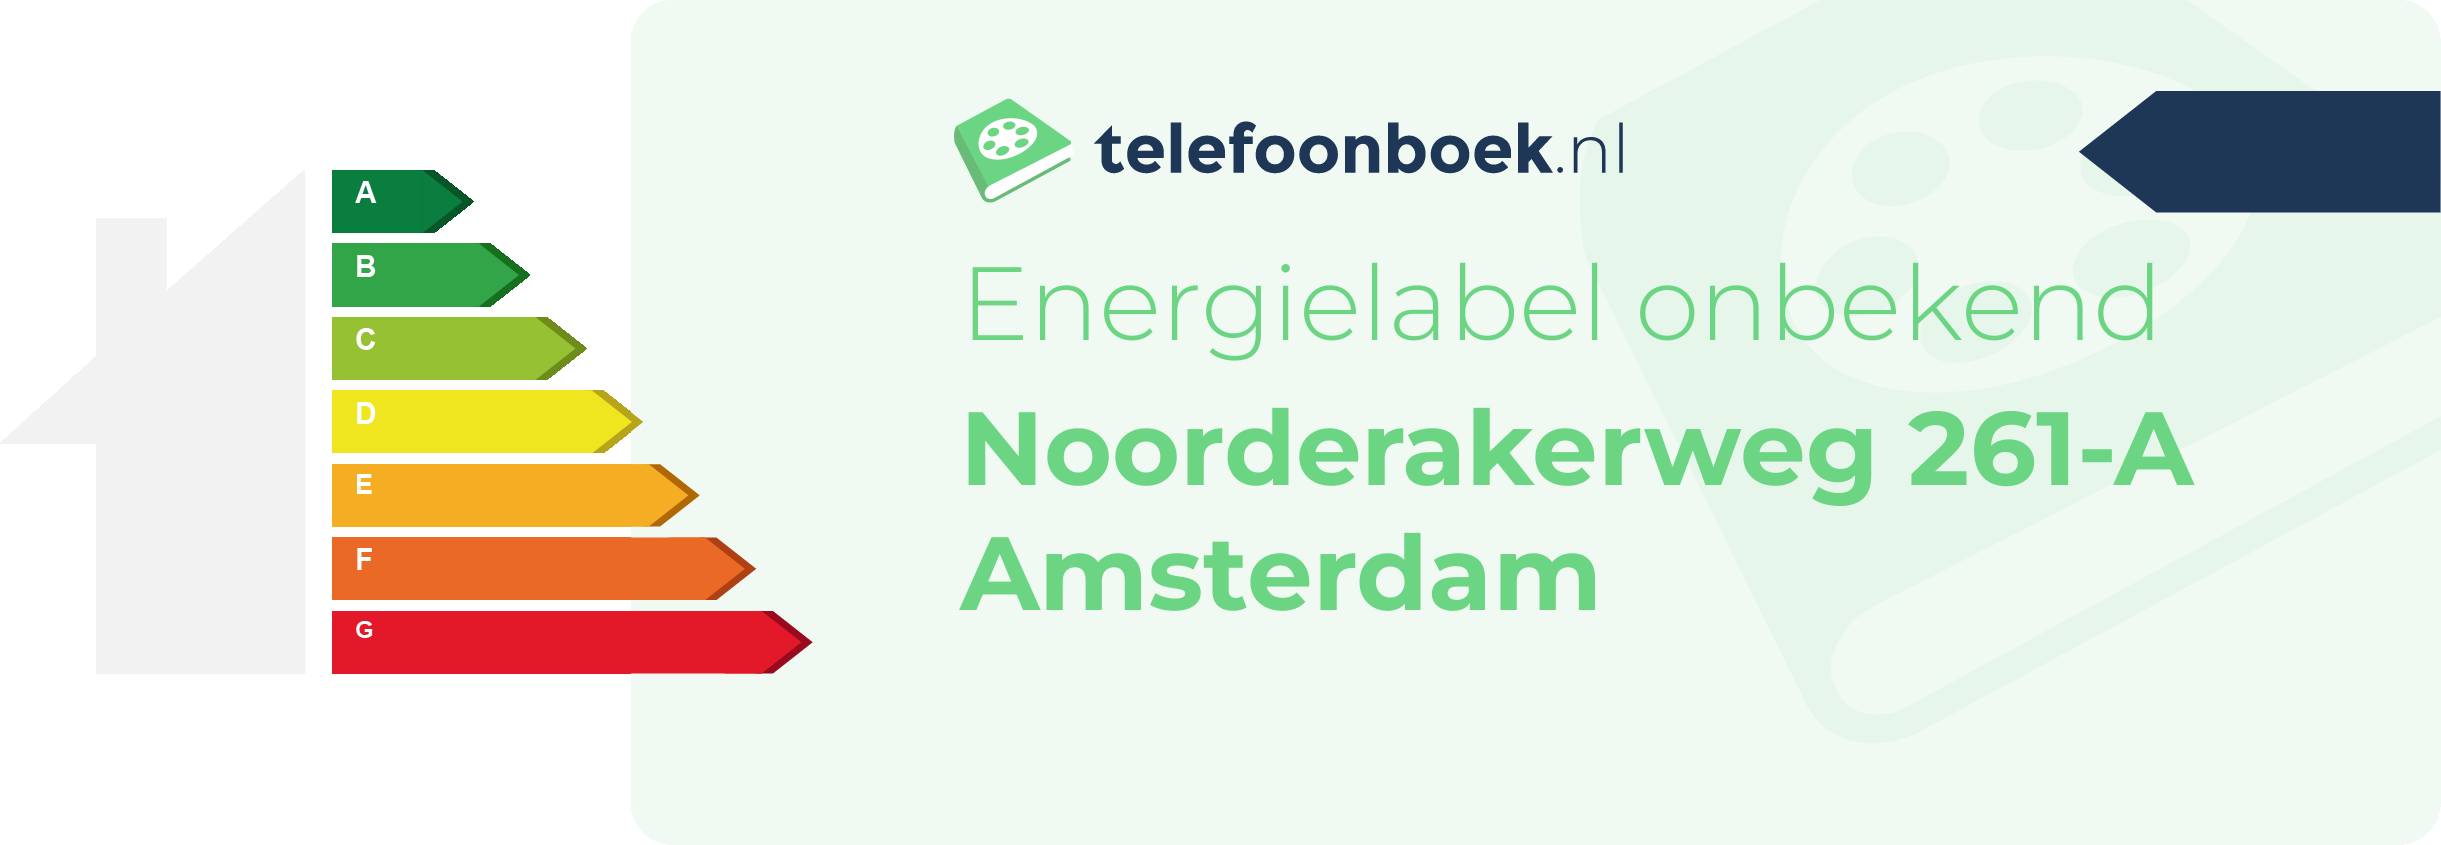 Energielabel Noorderakerweg 261-A Amsterdam